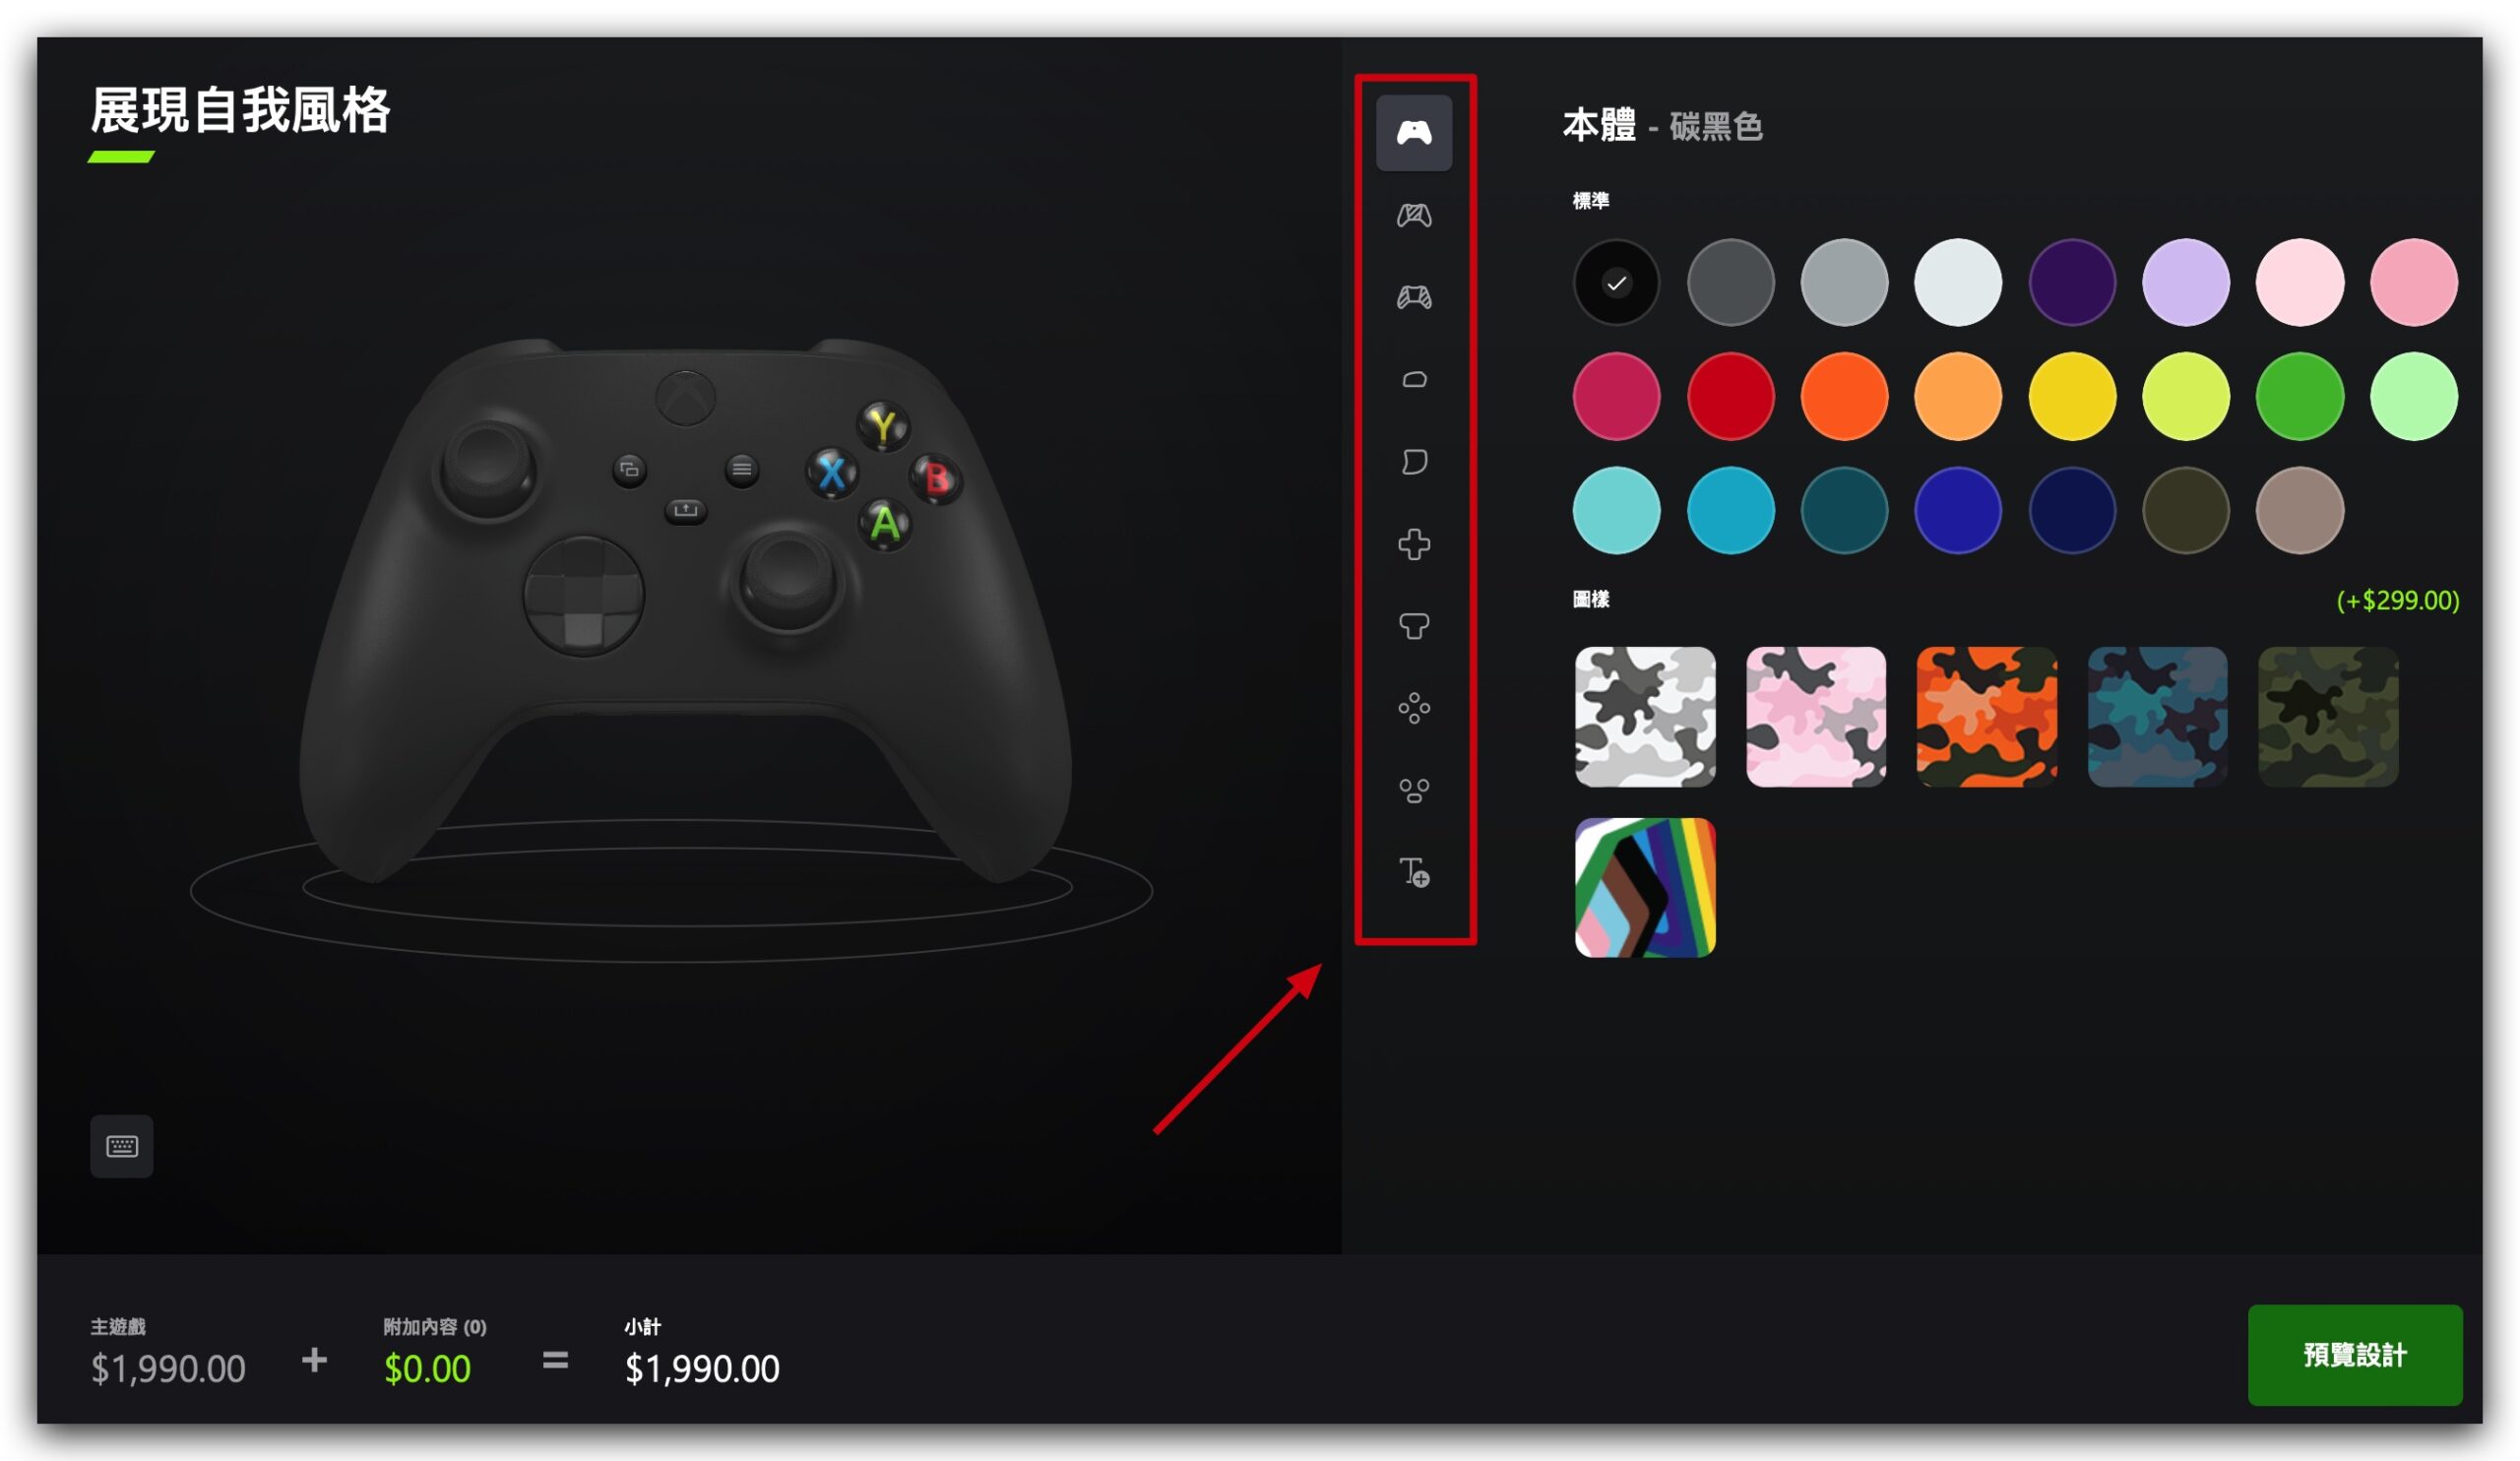 Xbox Design Lab 遊戲手把控制器